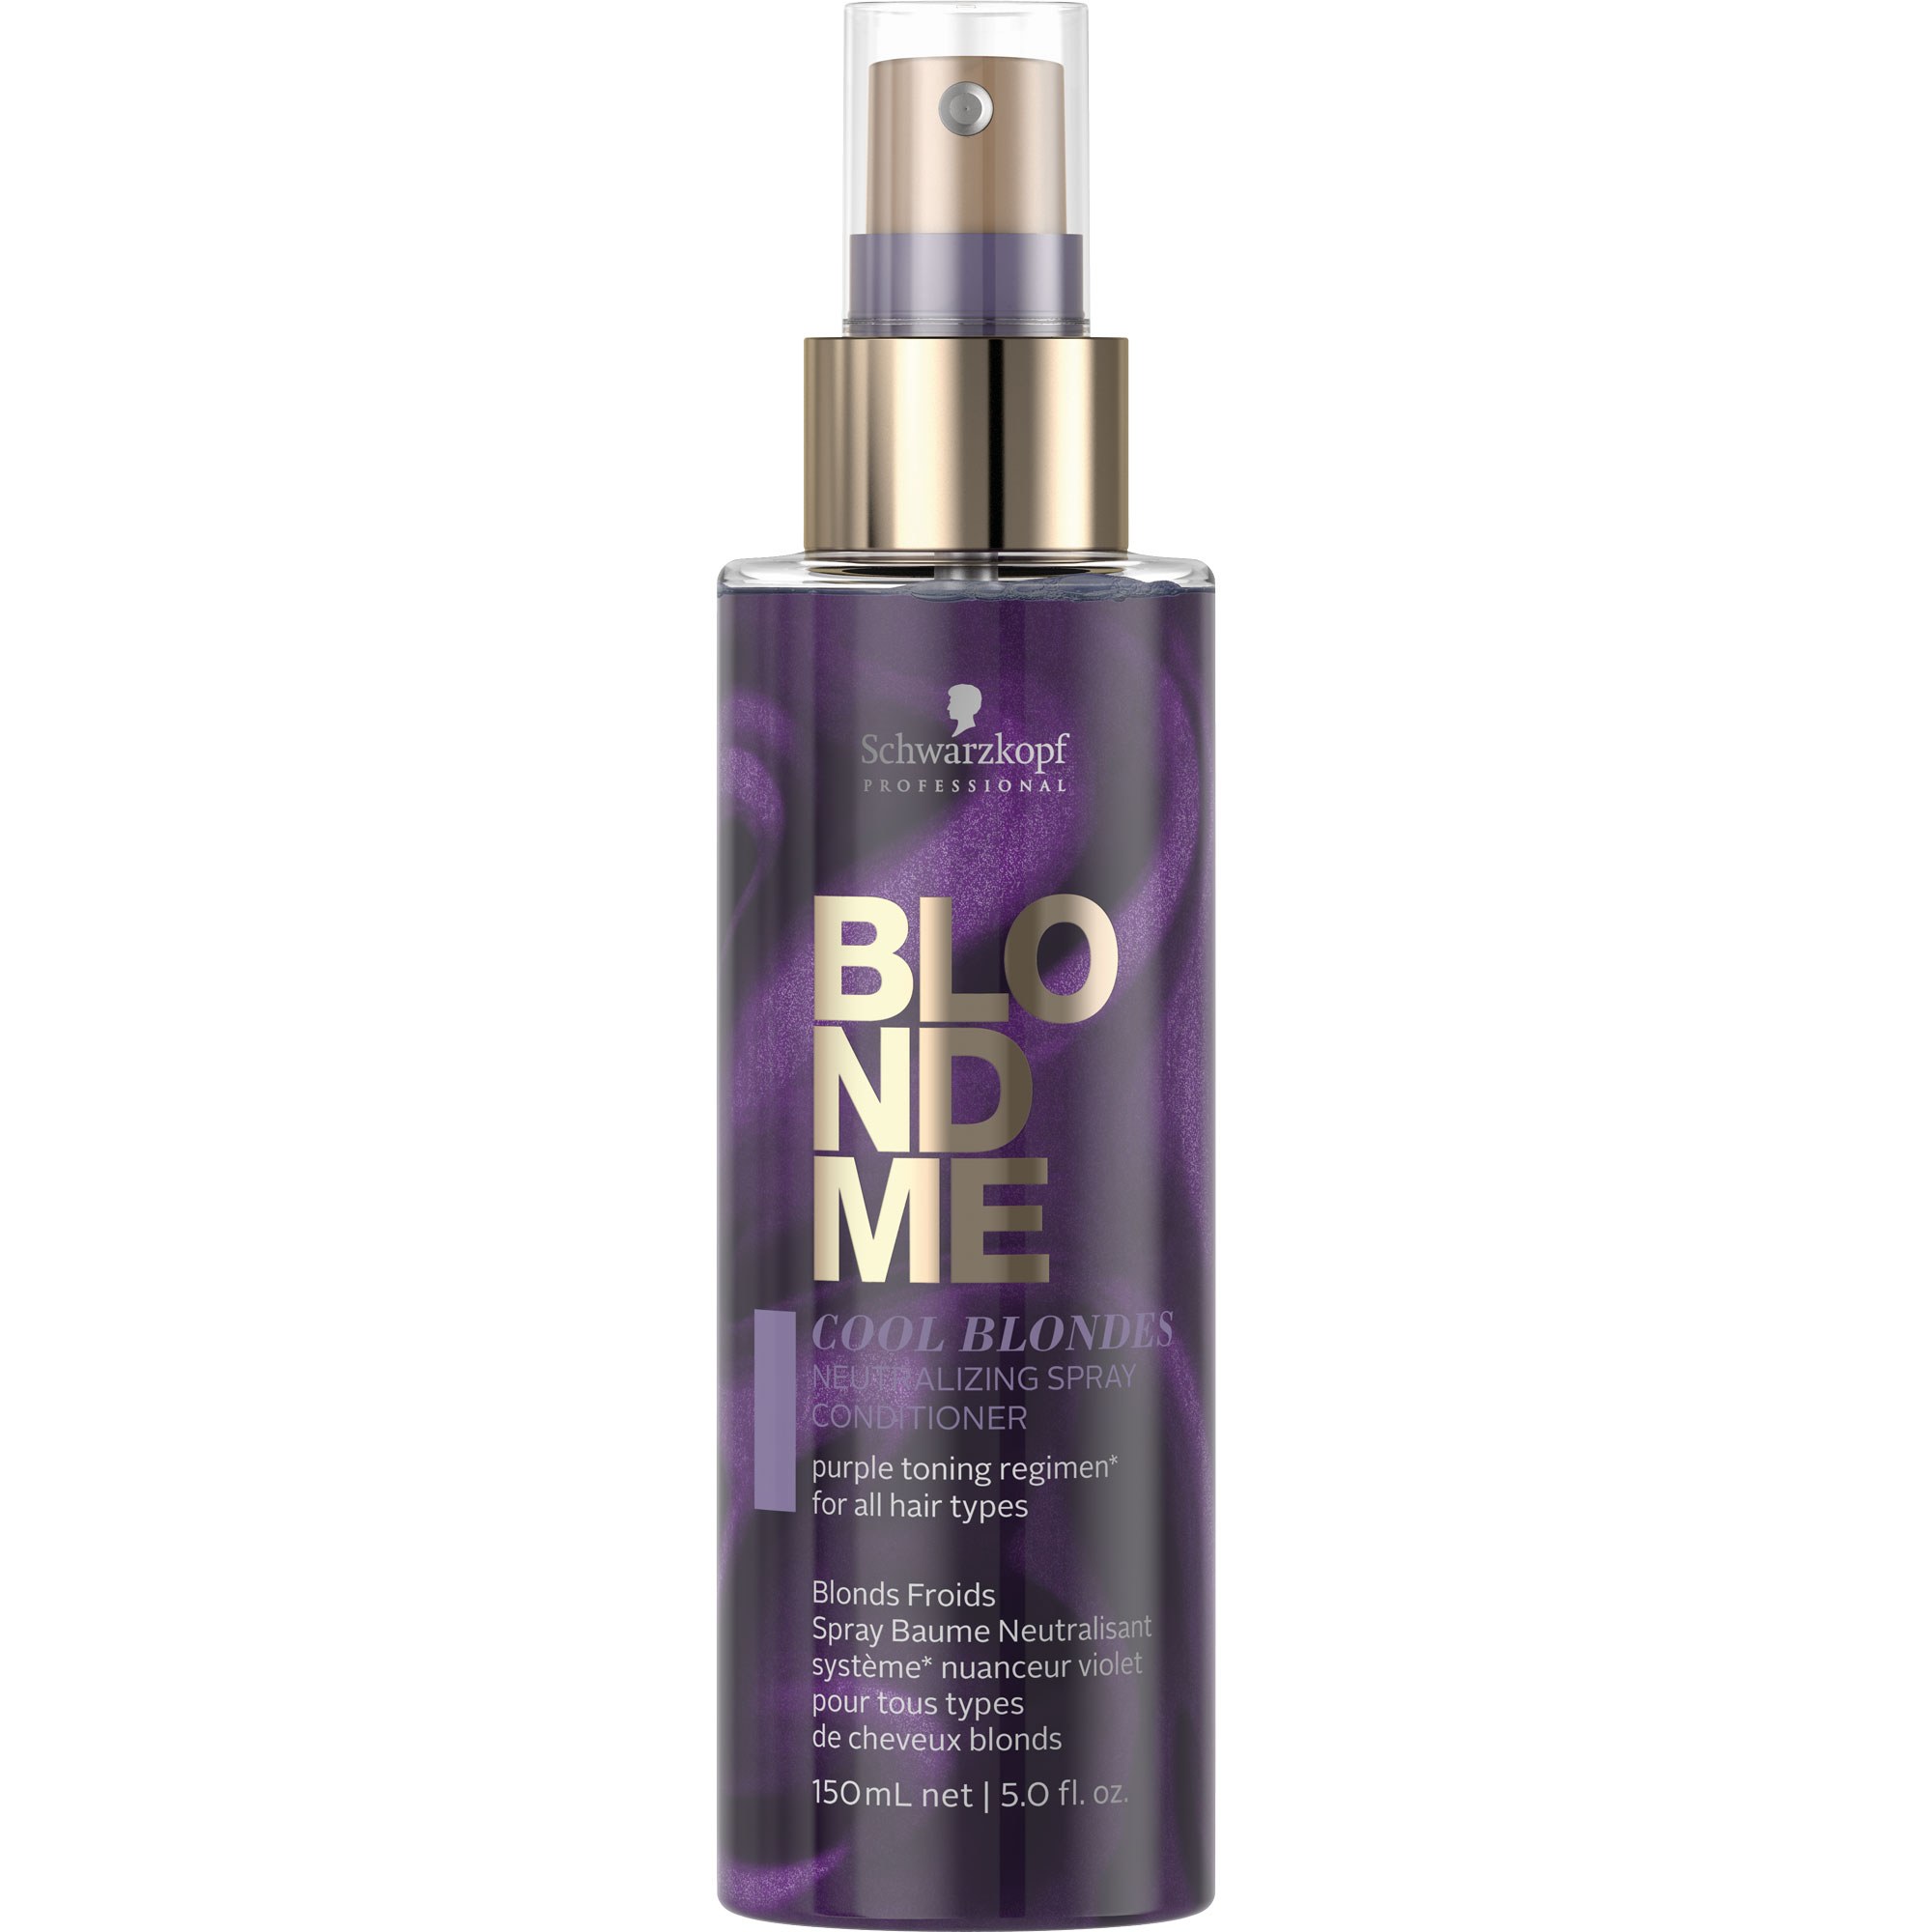 Schwarzkopf BLONDME® Neutralizing Spray Conditioner for Cool Blondes 5oz